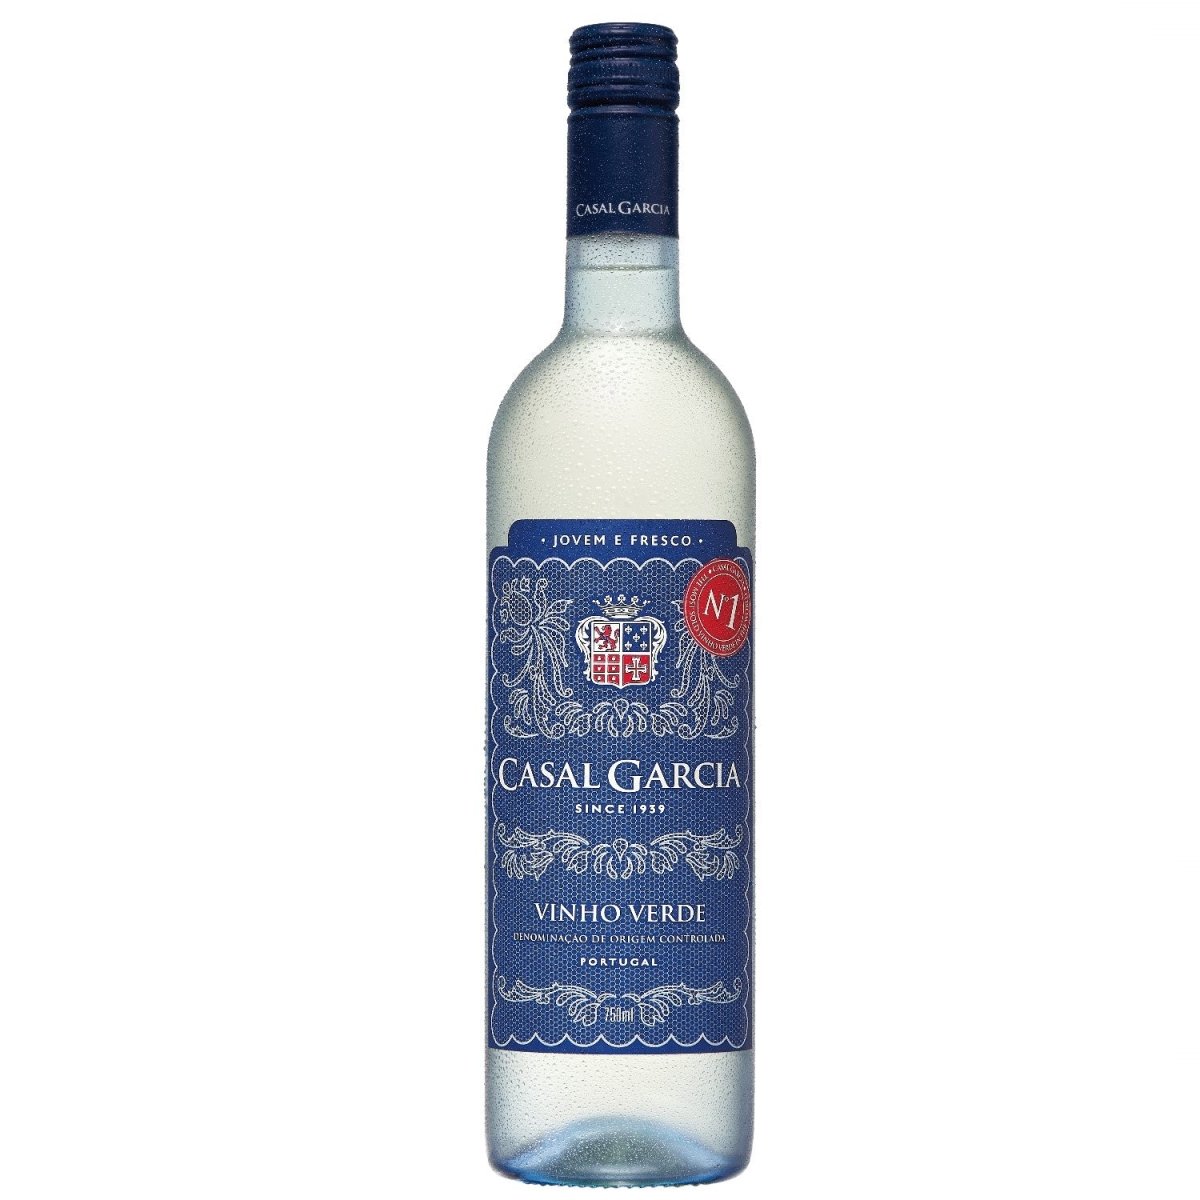 Casal Garcia Vinho Verde Quinta Da Aveleda Trajadura Weißwein Wein halbtrocken Portugal (6 x 0.75l) - Versanel -